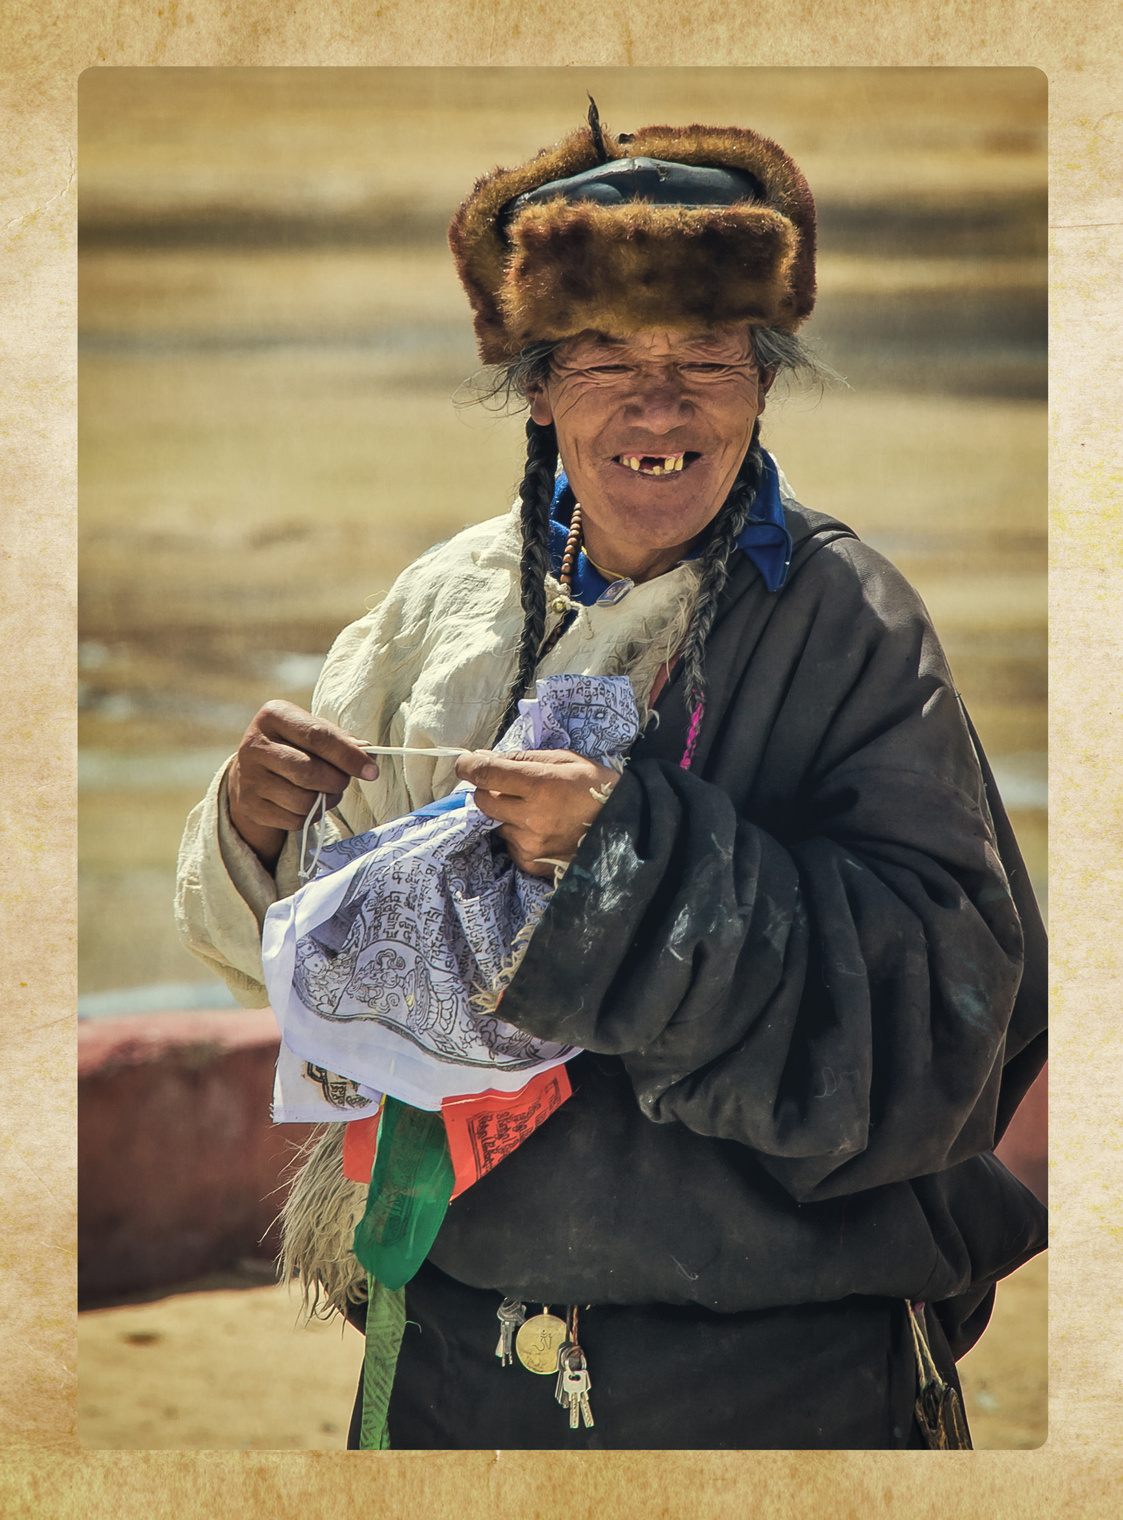 Довольный человек с Тибета.